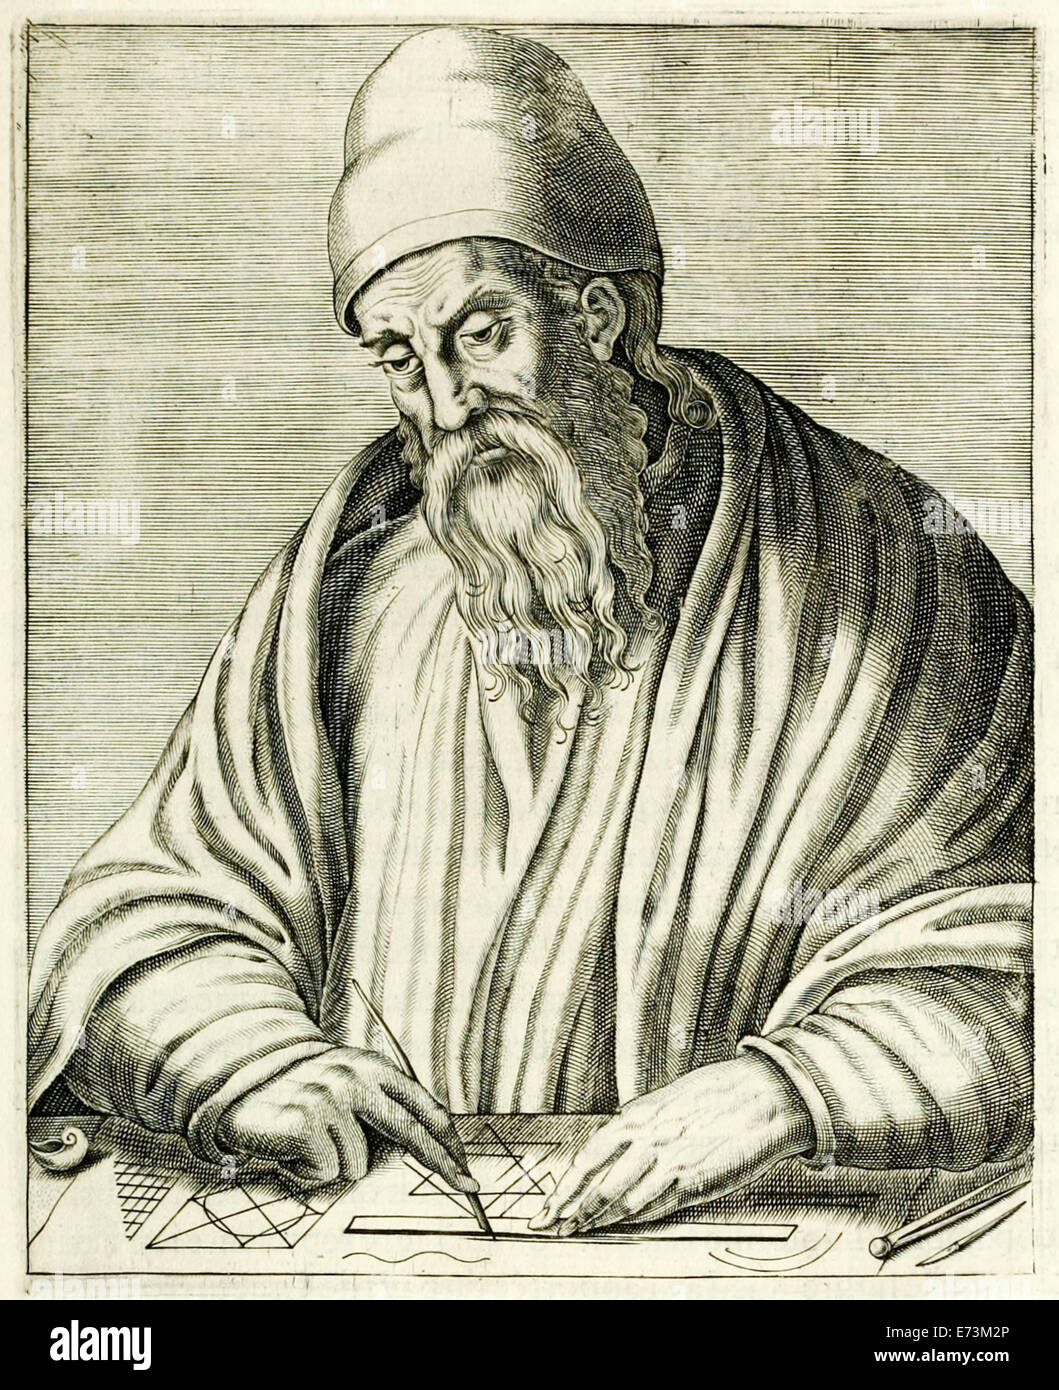 Griechischer Mathematiker Euklid von Alexandria (450-350BC), der "Elemente" eines der einflussreichsten Werke in der Geschichte der Mathematik schrieb. Kupferstich von Frère André Thévet (1516-1590) veröffentlichte im Jahre 1594. Siehe Beschreibung für mehr Informationen. Stockfoto